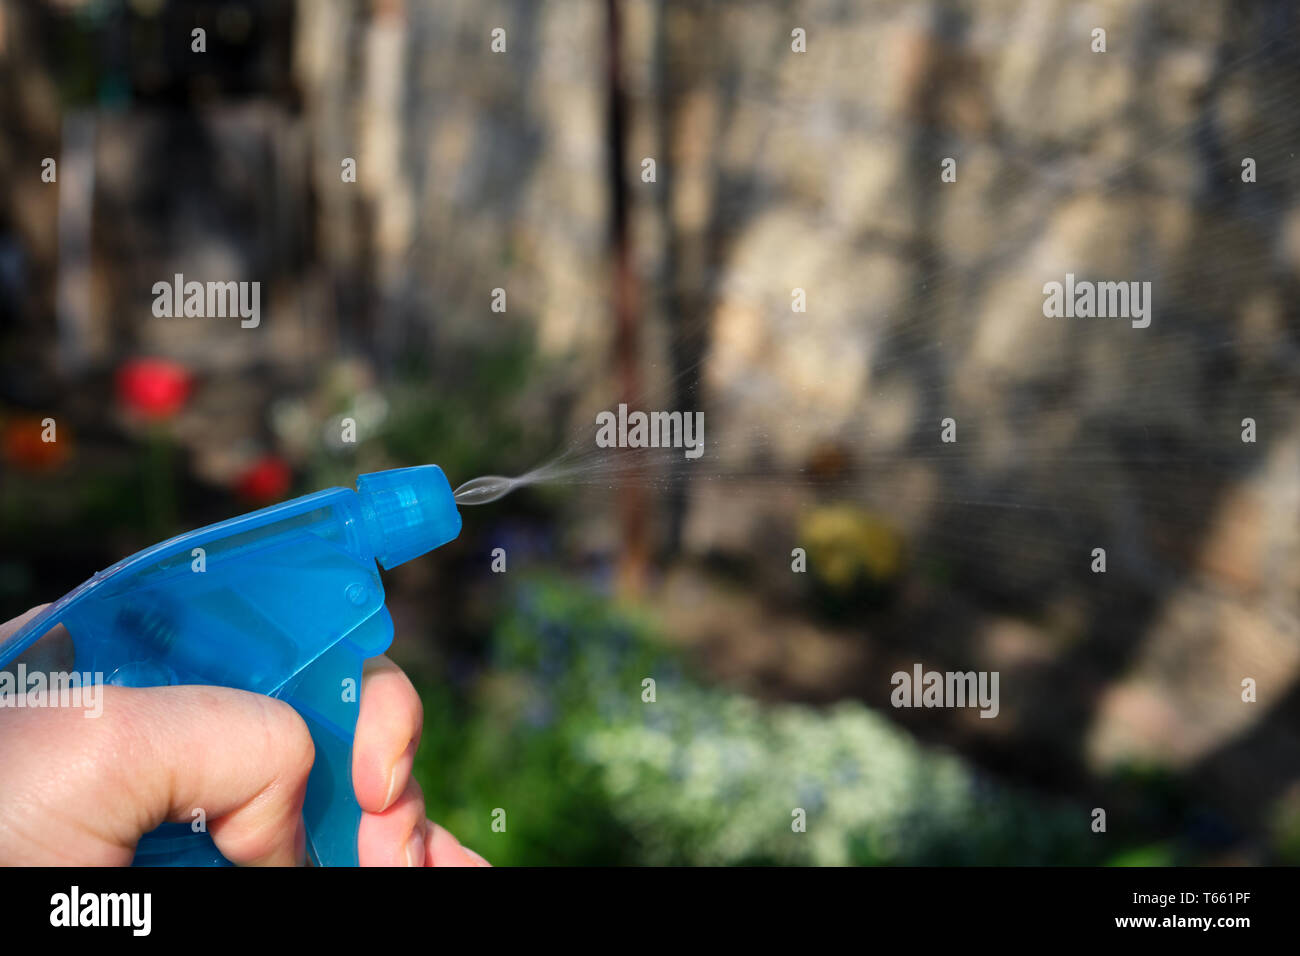 Femme main tenant une bouteille en plastique bleu avec du liquide et la pulvérisation de produits chimiques pour tuer les plantes et les insectes ravageurs, journée de printemps Banque D'Images